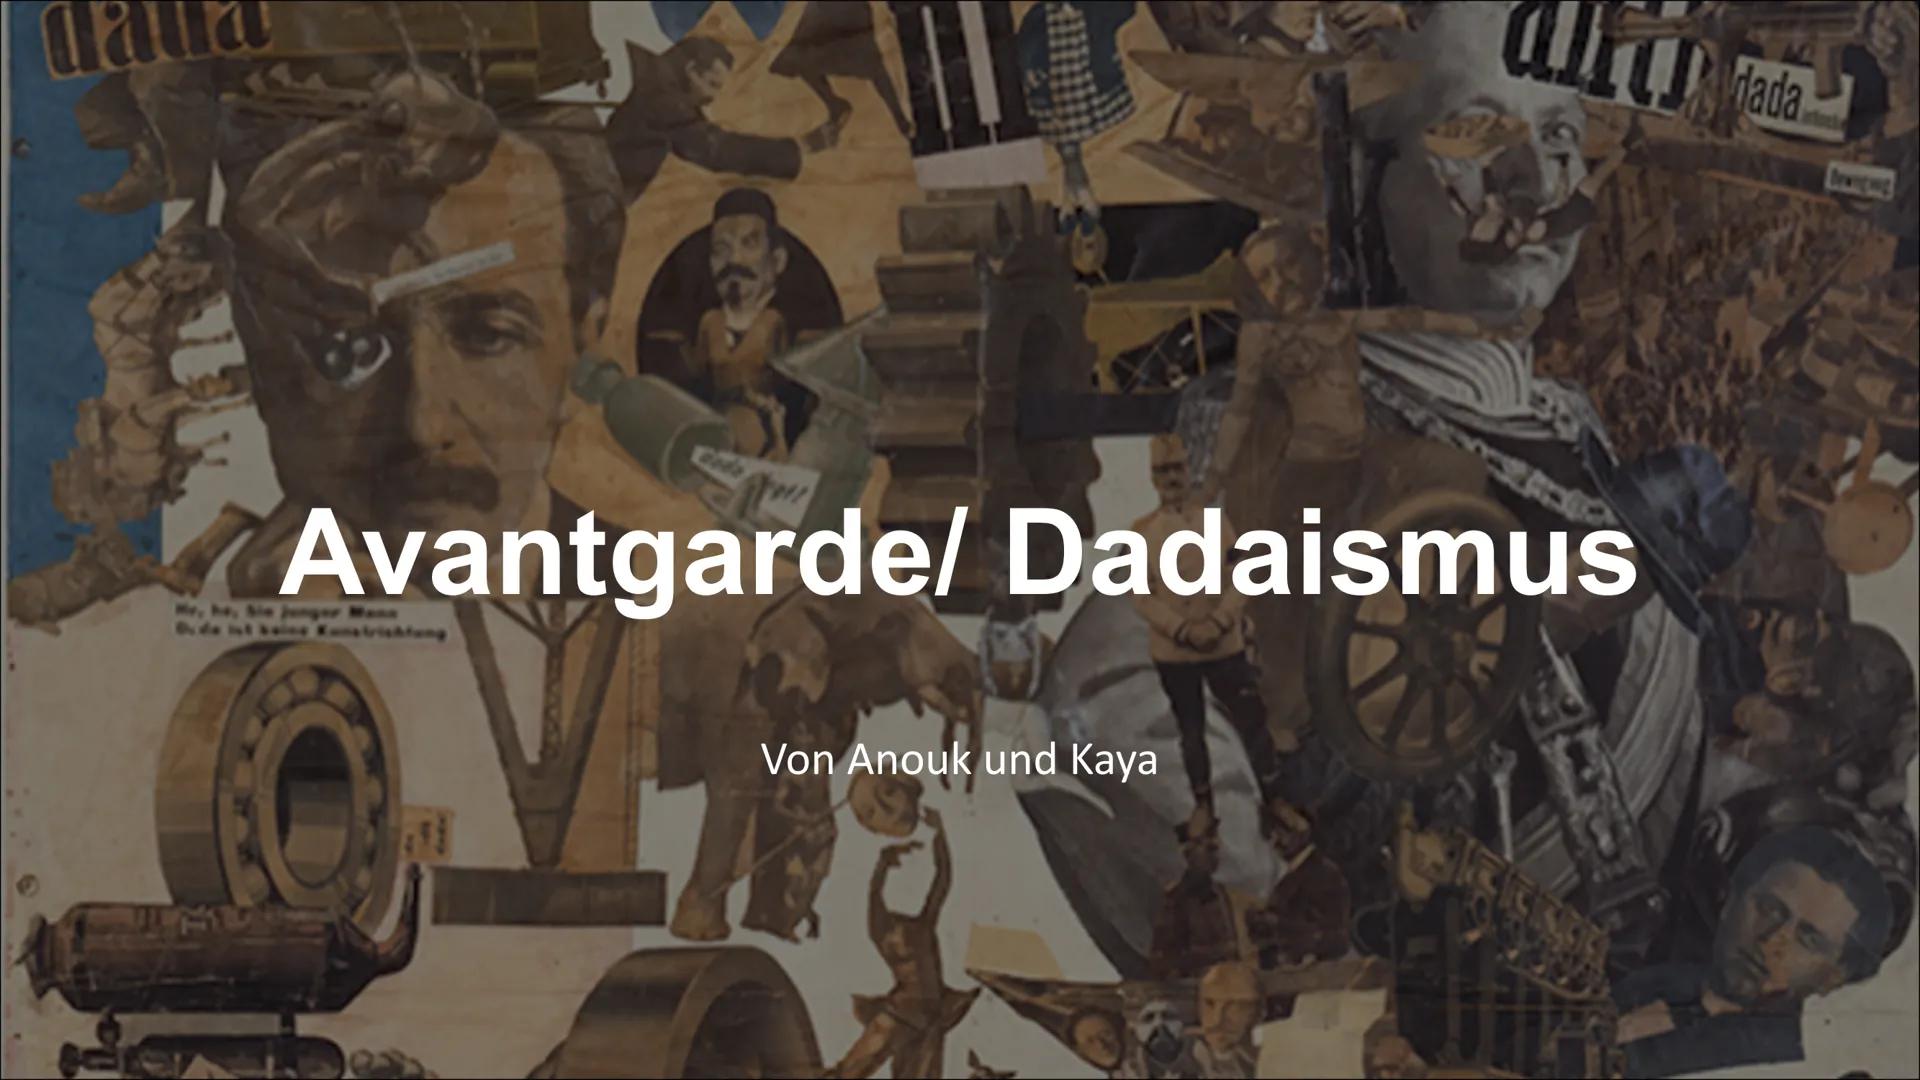 Avantgarde/ Dadaismus
Von Anouk und Kaya
dada Kennzeichen
●
●
●
Brechung der Gesetze der Logik
• Aufhebung der Syntax
●
●
●
Ablehnung des Ve